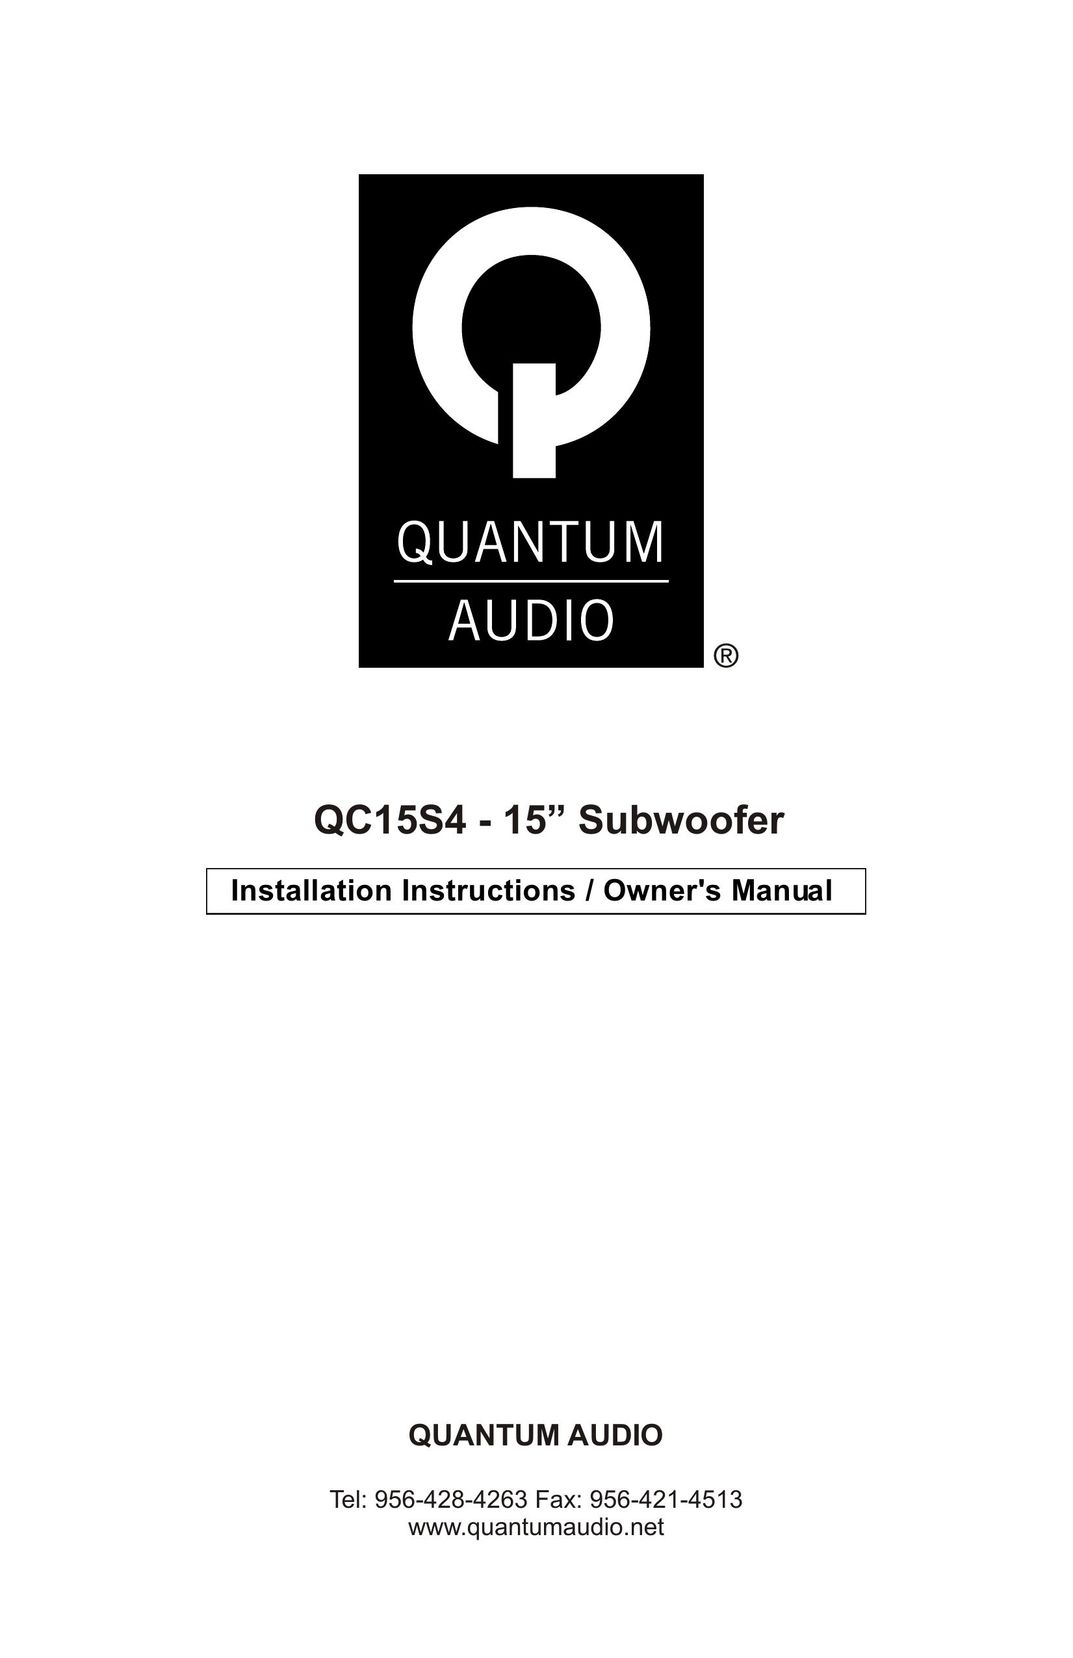 Quantum Audio QC15S4 Speaker System User Manual